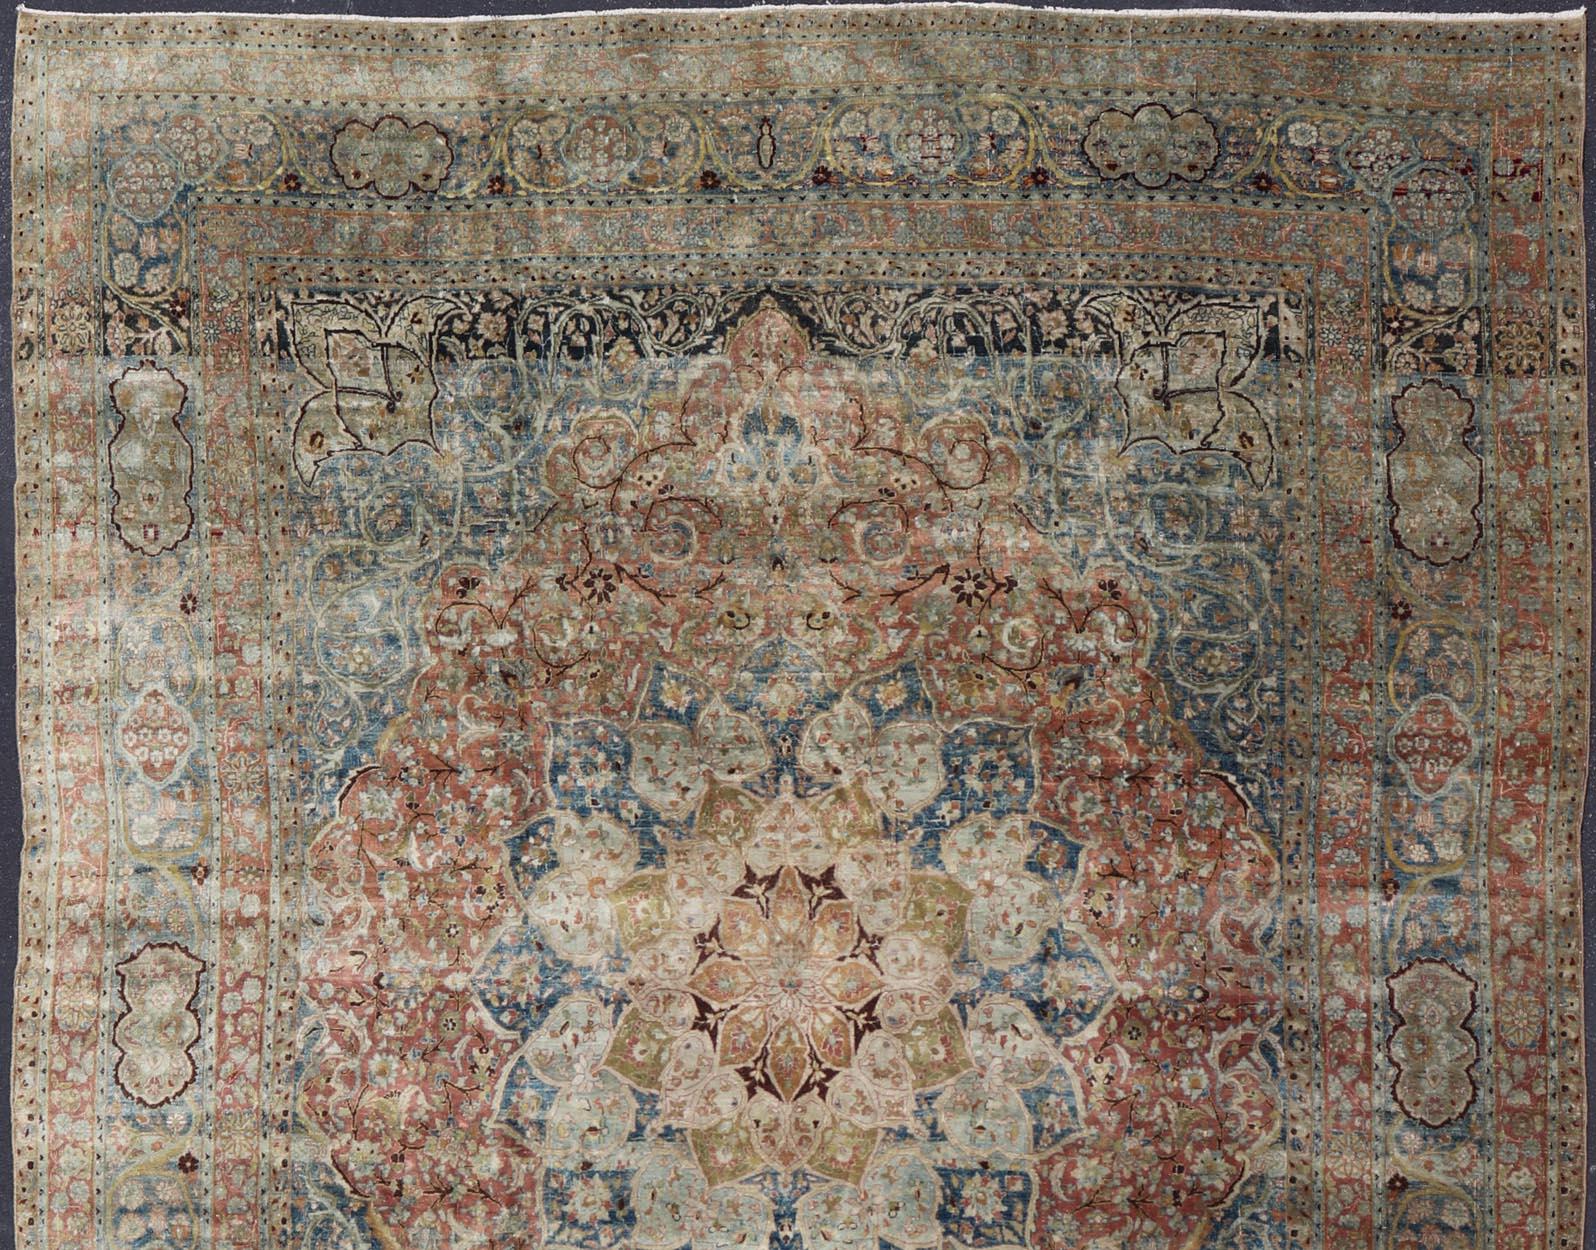 Großer antiker persischer Mashad-Teppich mit buntem Blumen- und Medaillonmuster, kwarugs / 17-0602. Persisches Mashhad-Blumenmuster. 

Dieser herausragende farbenfrohe antike persische Mashad-Teppich zeichnet sich vor allem durch seine klassische